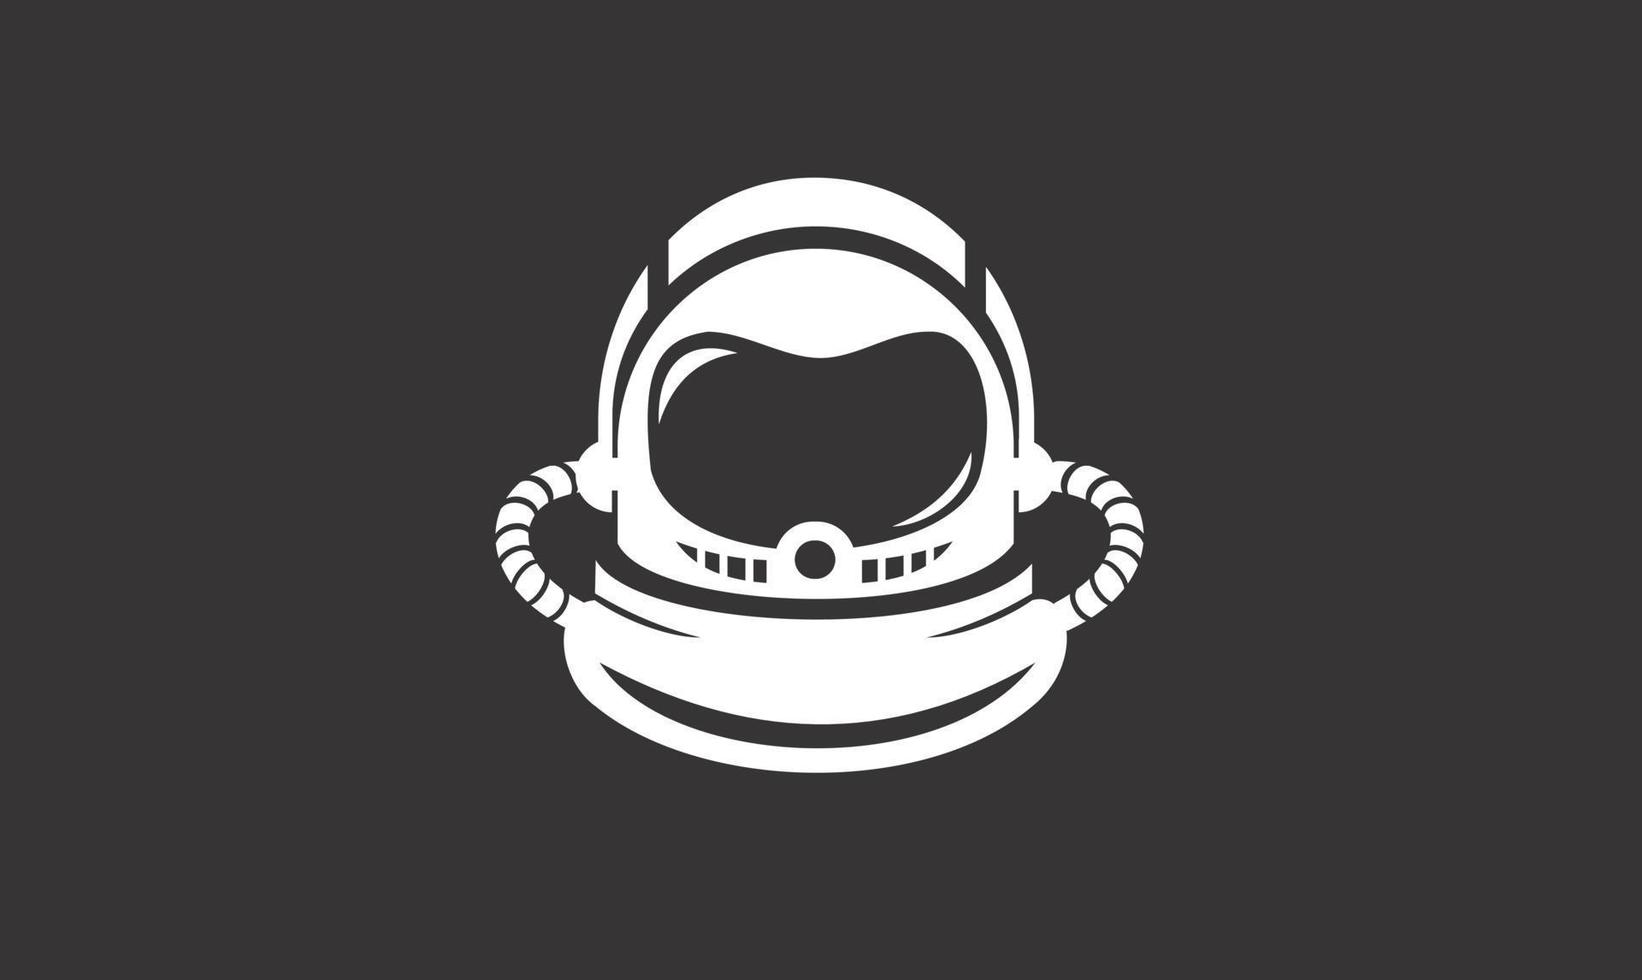 Design des Astronauten-Logos vektor